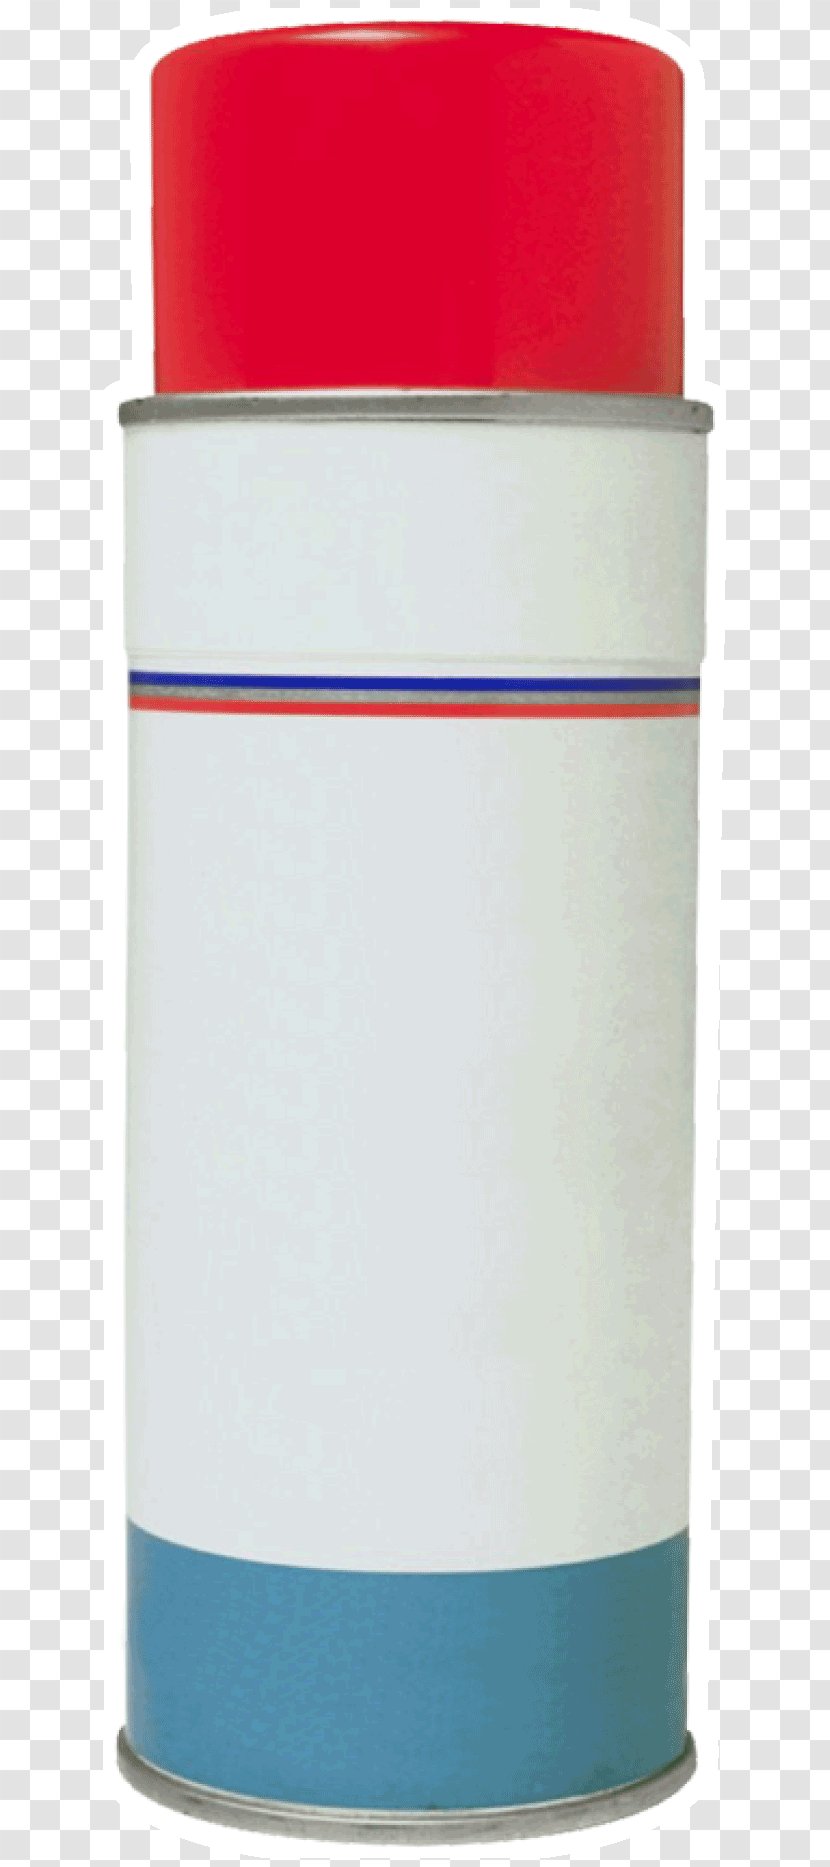 Cylinder - Design Transparent PNG